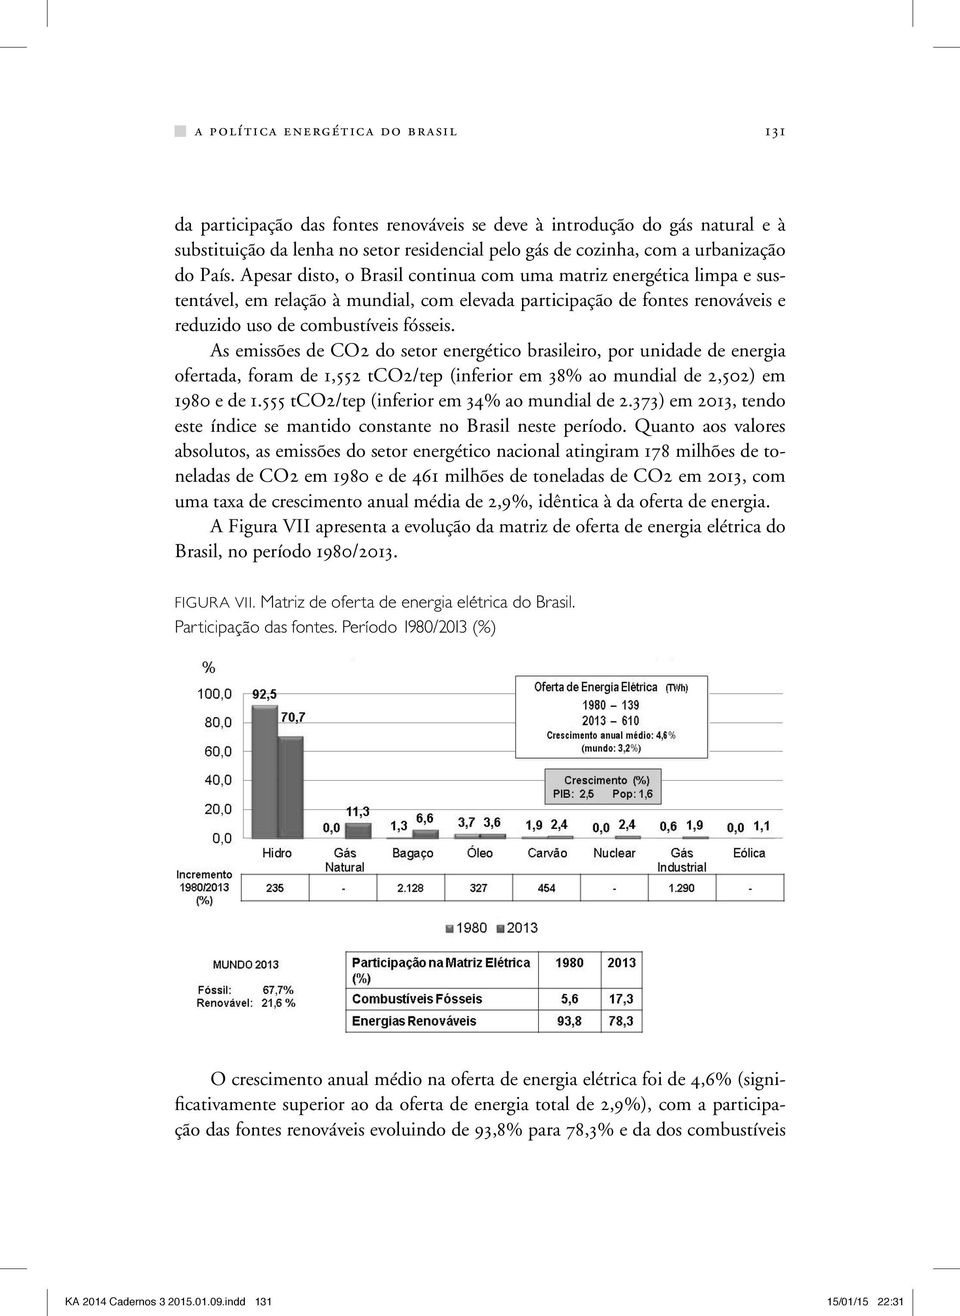 As emissões de CO2 do setor energético brasileiro, por unidade de energia ofertada, foram de 1,552 tco2/tep (inferior em 38% ao mundial de 2,502) em 1980 e de 1.